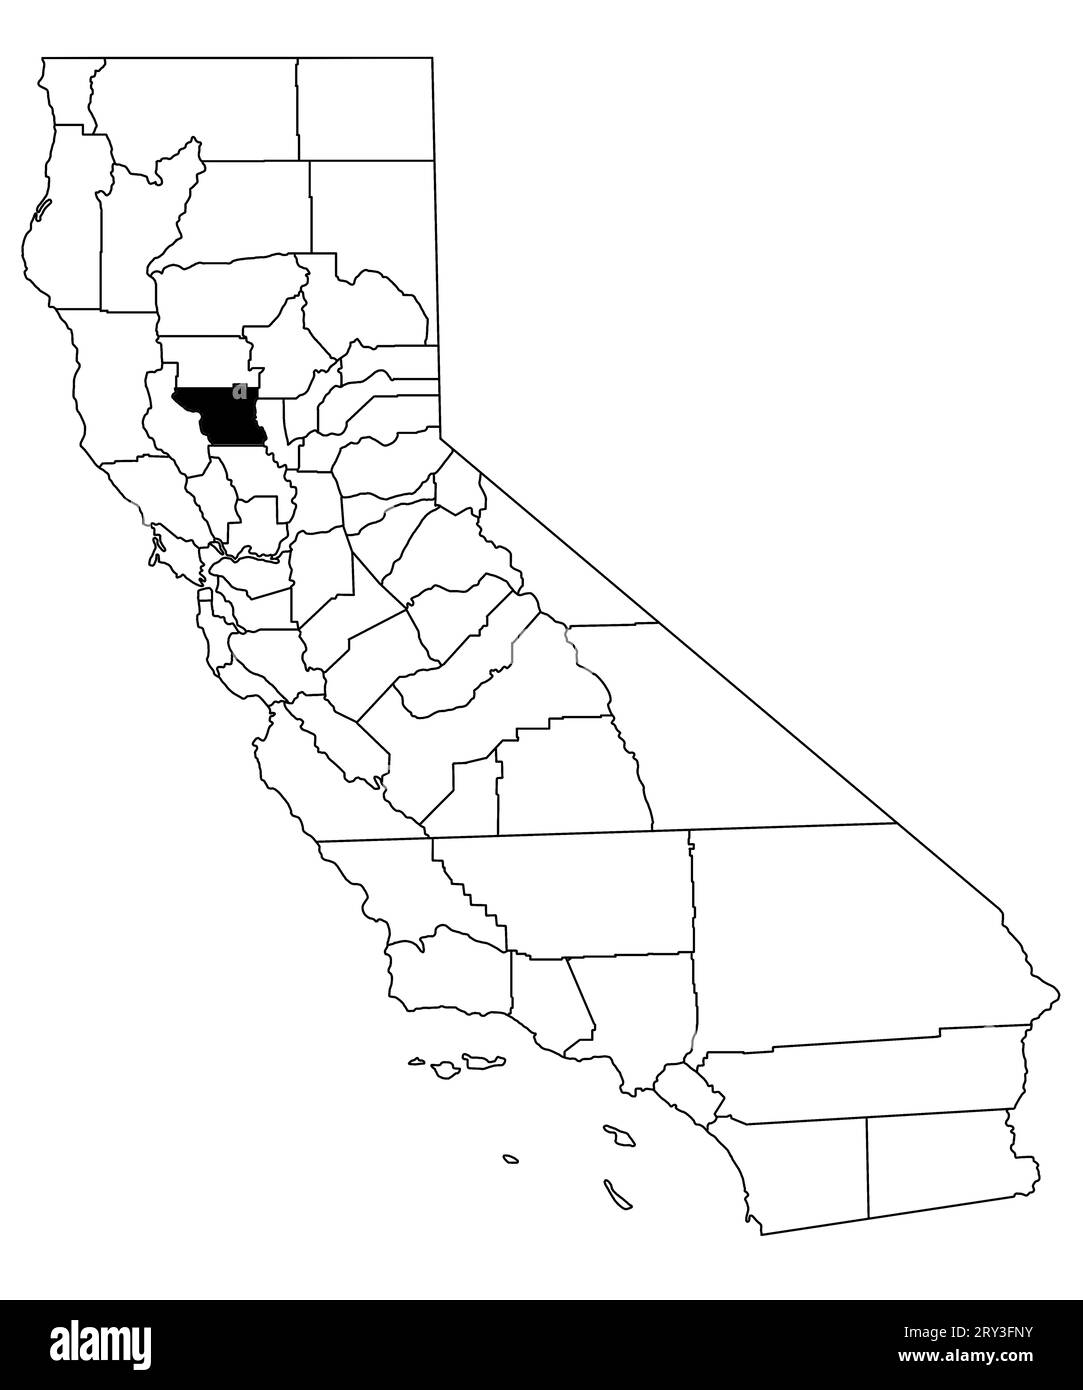 Mappa della contea di colusa nello stato della California su sfondo bianco. Mappa singola della contea evidenziata in nero sulla mappa della California. STATI UNITI, STATI UNITI Foto Stock